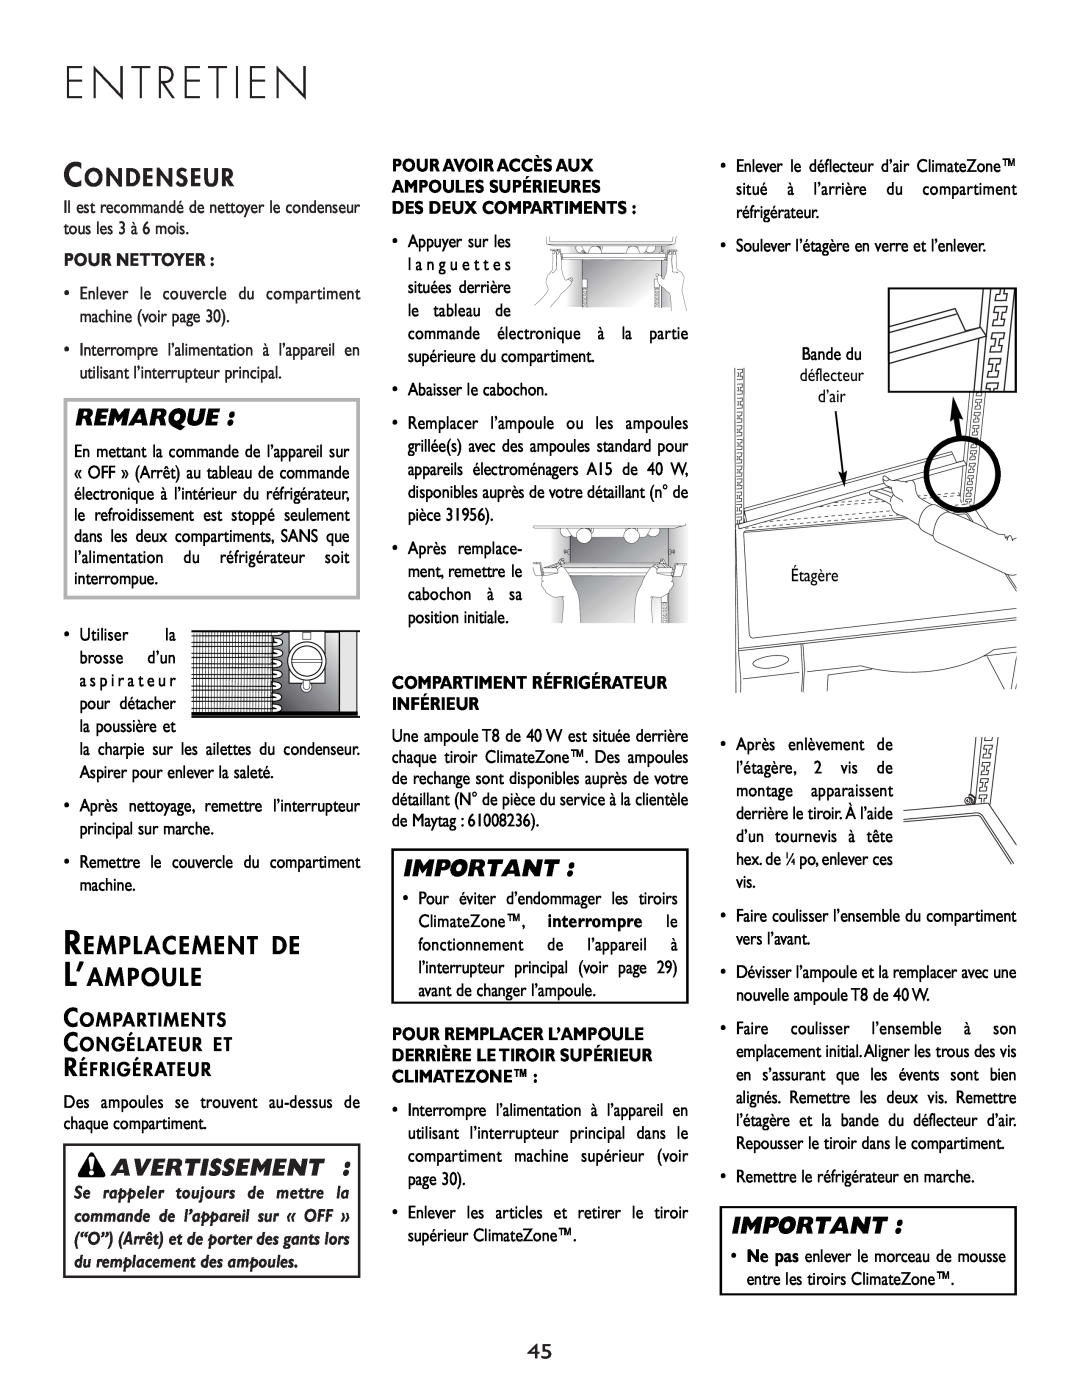 Cuno 111405-1 manual E N T R E T I E N, Avertissement, Condenseur, Remplacement De L’Ampoule, Remarque, Pour Nettoyer 